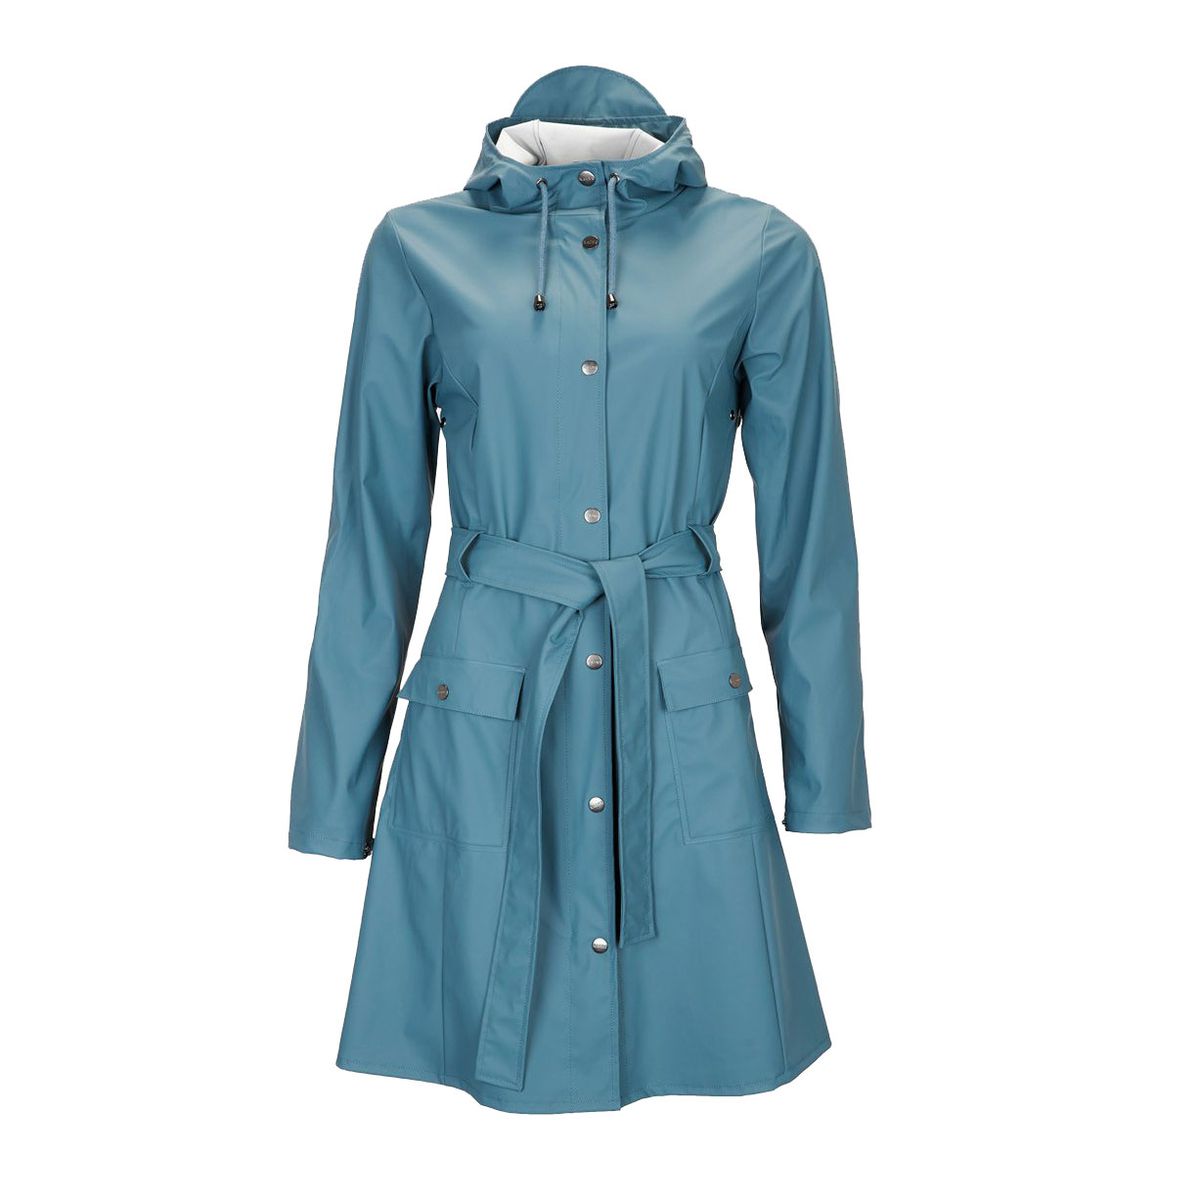 A blue raincoat